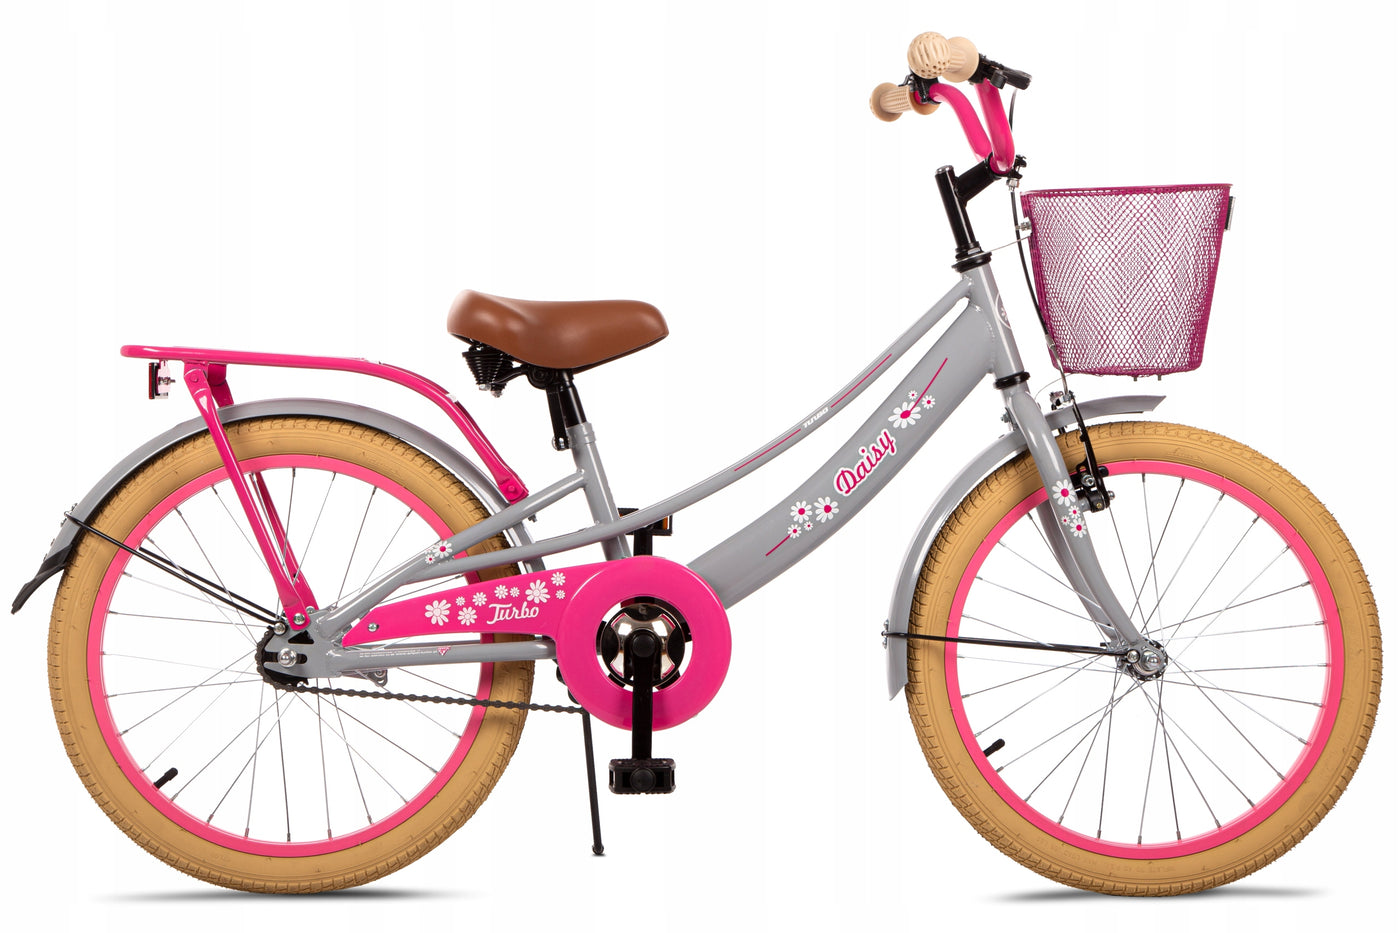 Vaikiškas dviratis Artpol Daisy 20 colių ratai